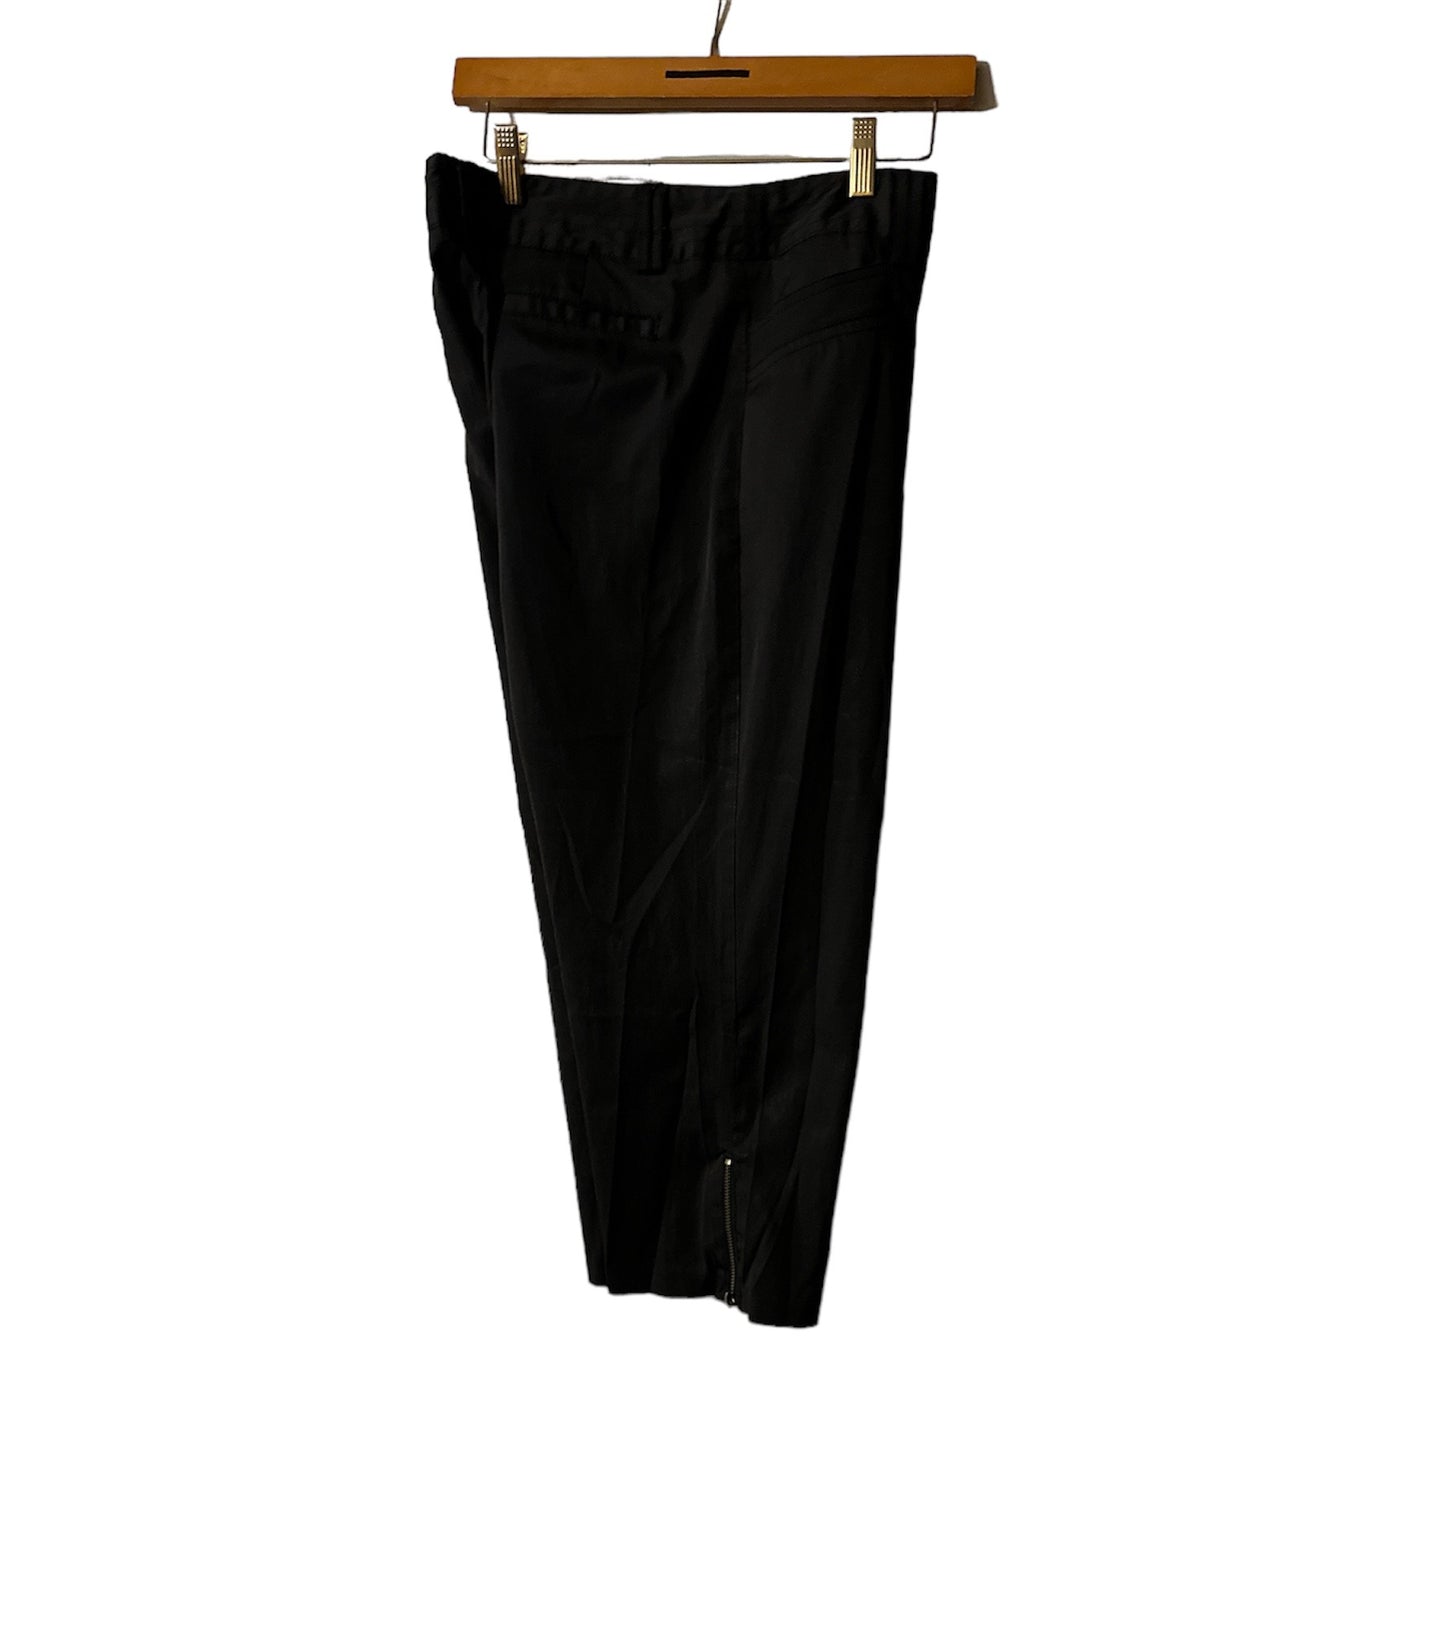 Harvé B. - Women's Black Capri Pants